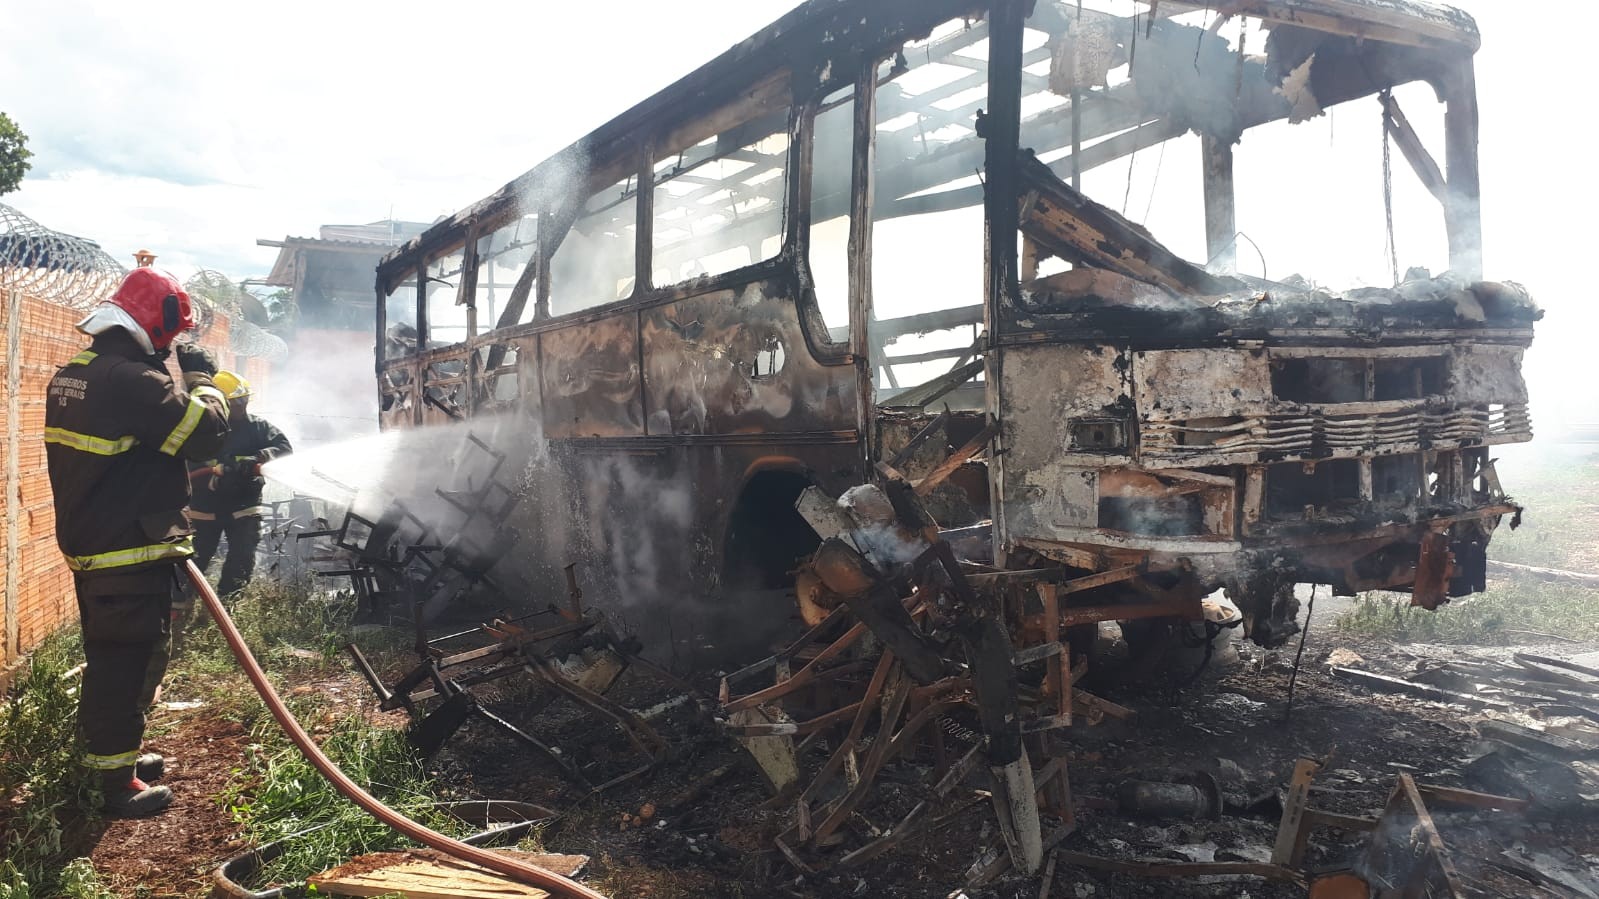 Bituca de cigarro pode ter causado incêndio que destruiu ônibus em Bocaiuva